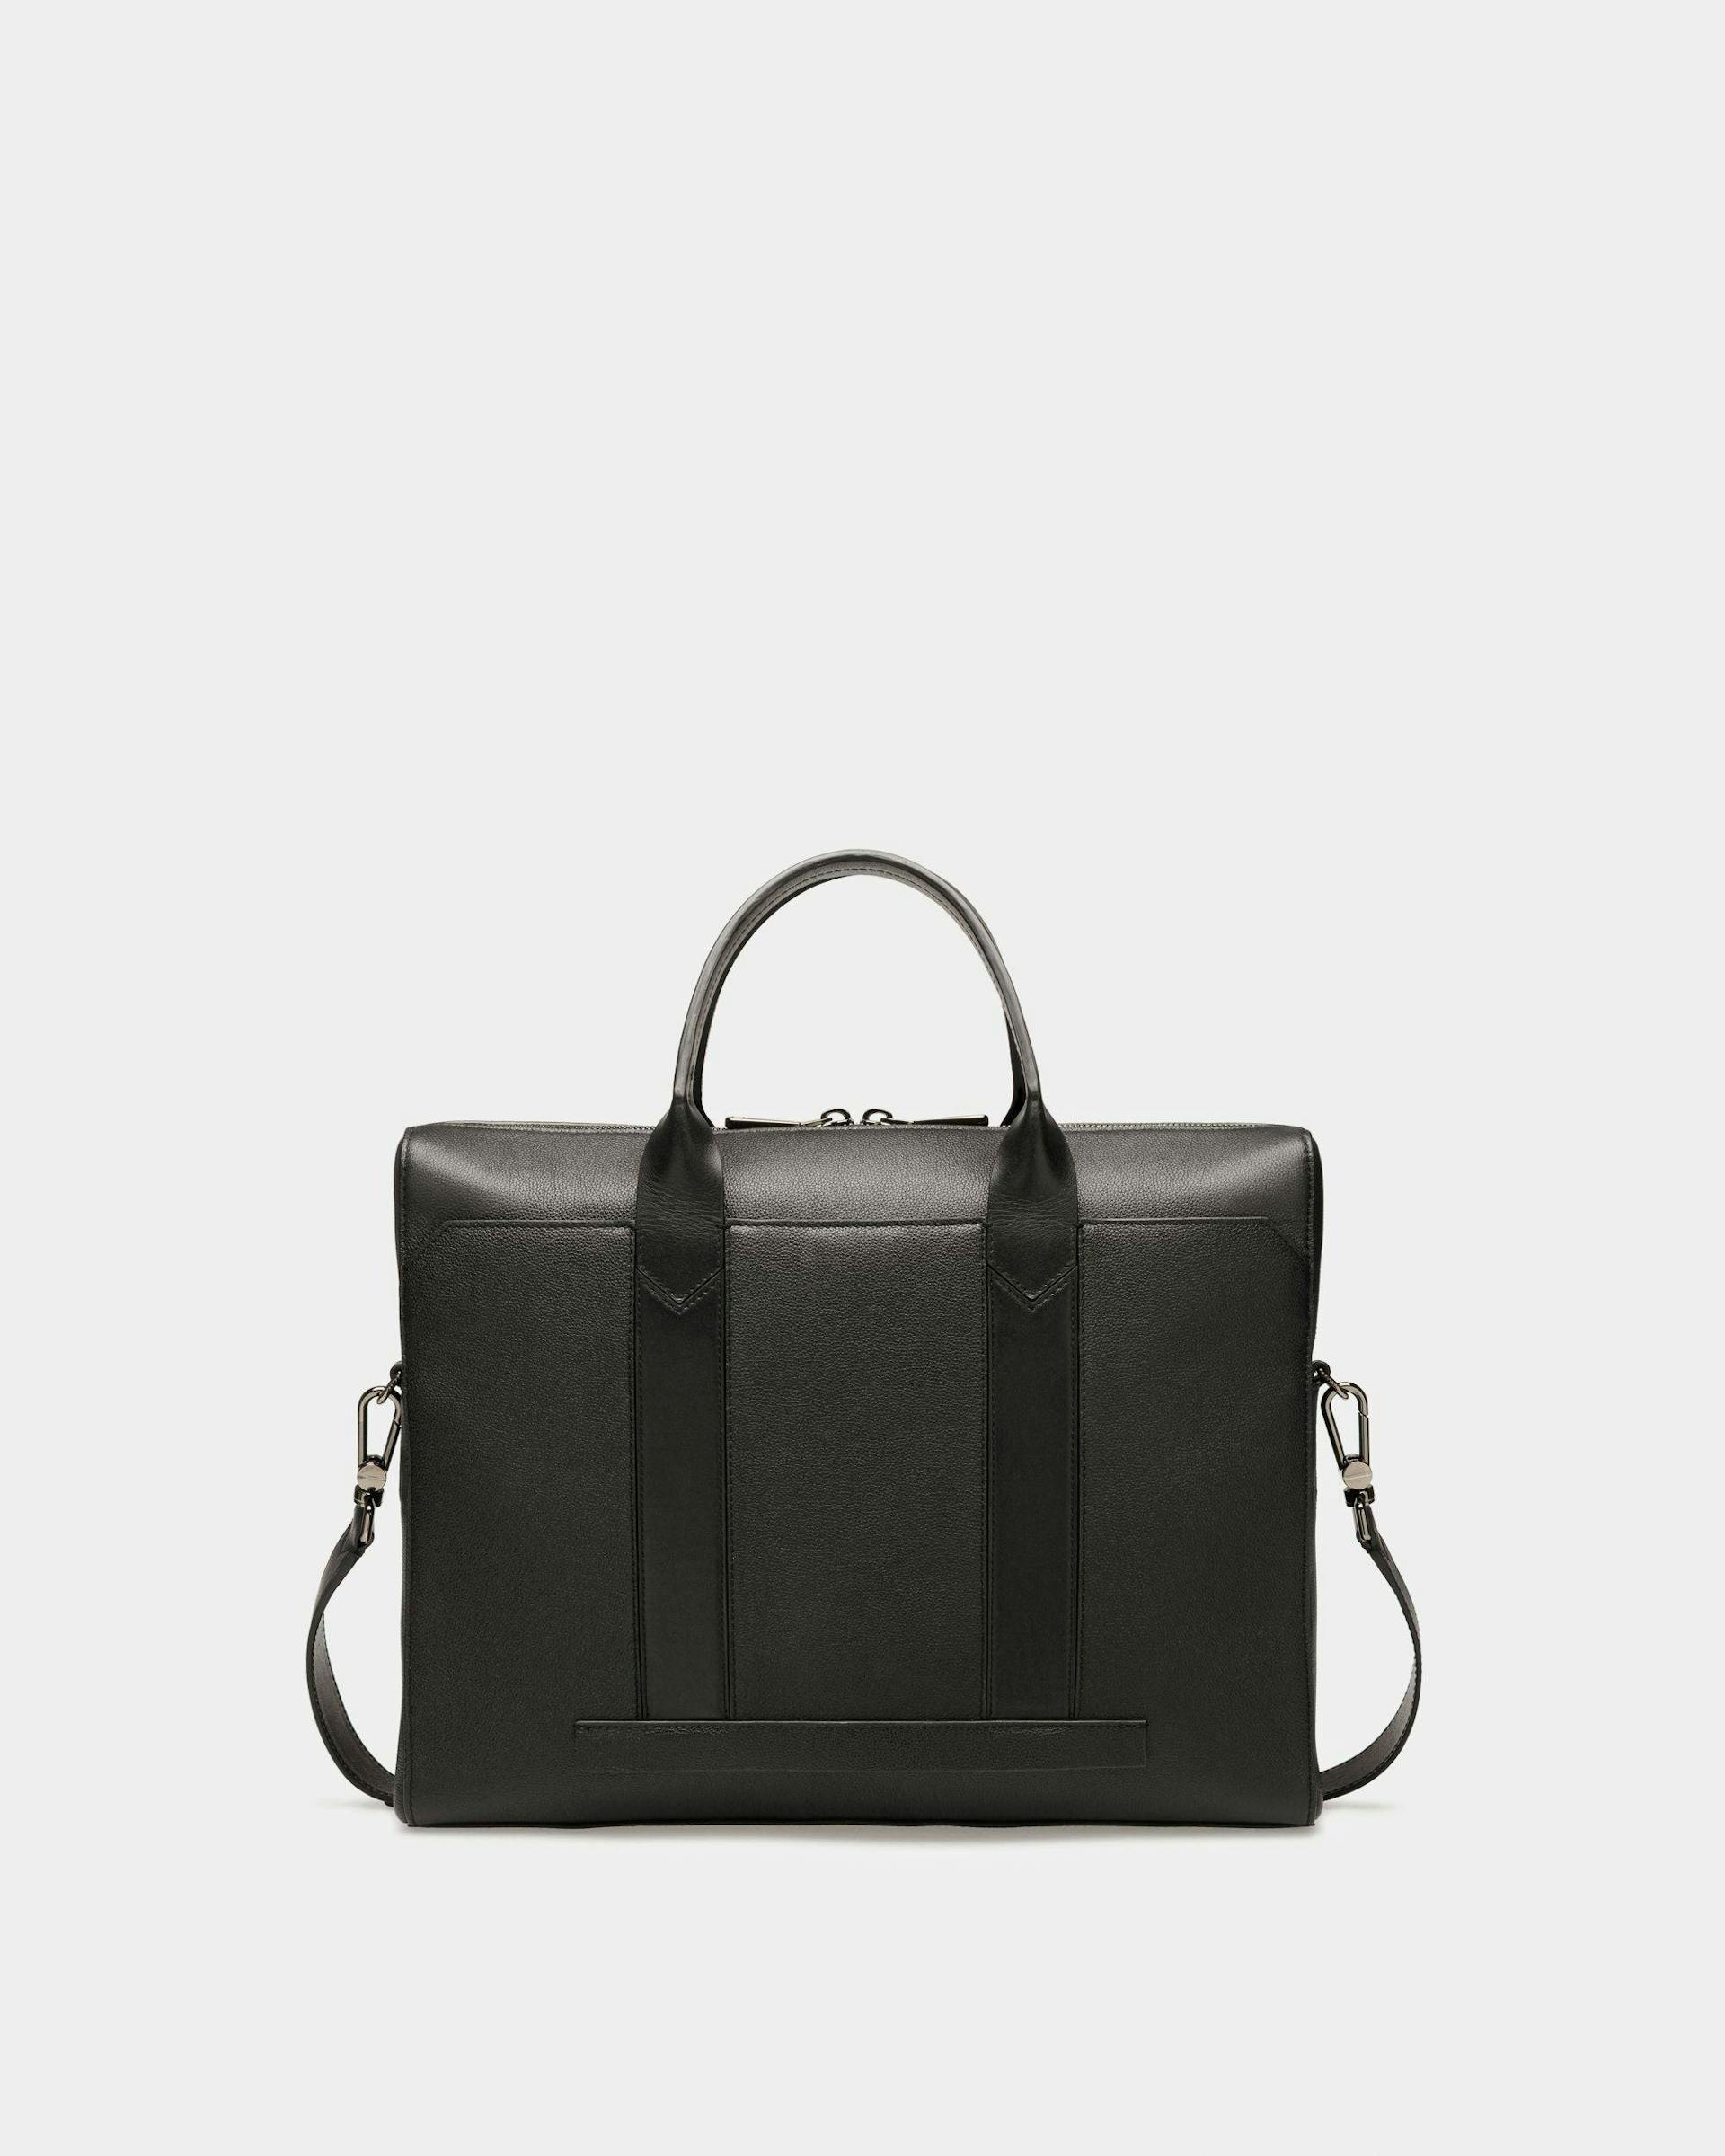 Elter Leather Business Bag In Black - Men's - Bally - 02